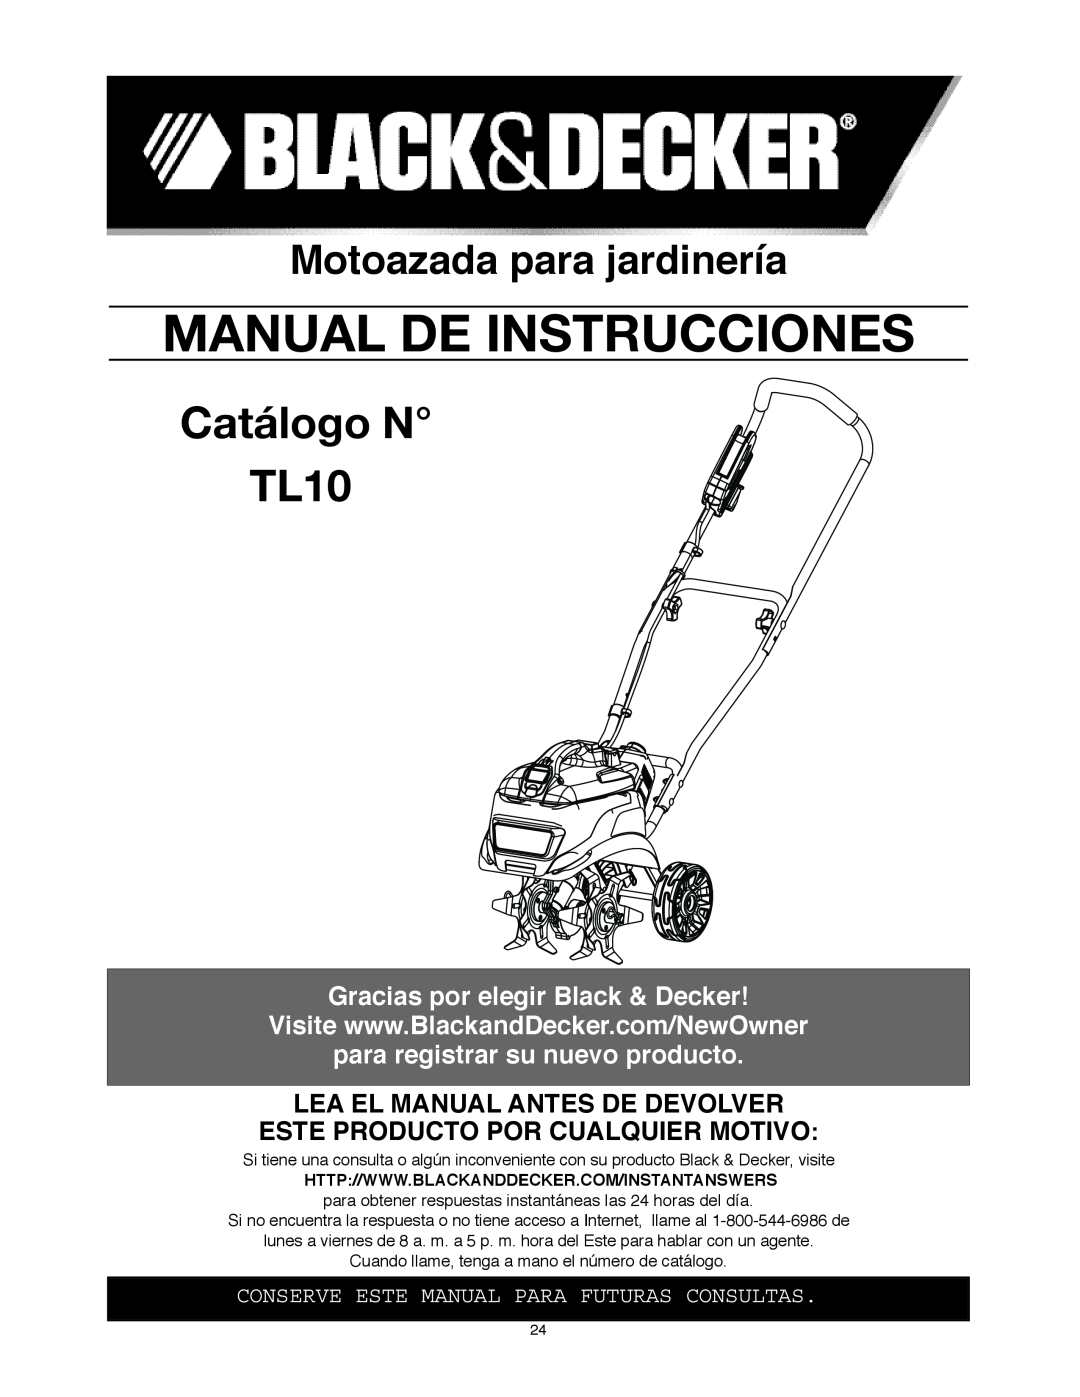 Black & Decker Catálogo N TL10, Motoazada para jardinería, Gracias por elegir Black & Decker, Manual De Instrucciones 